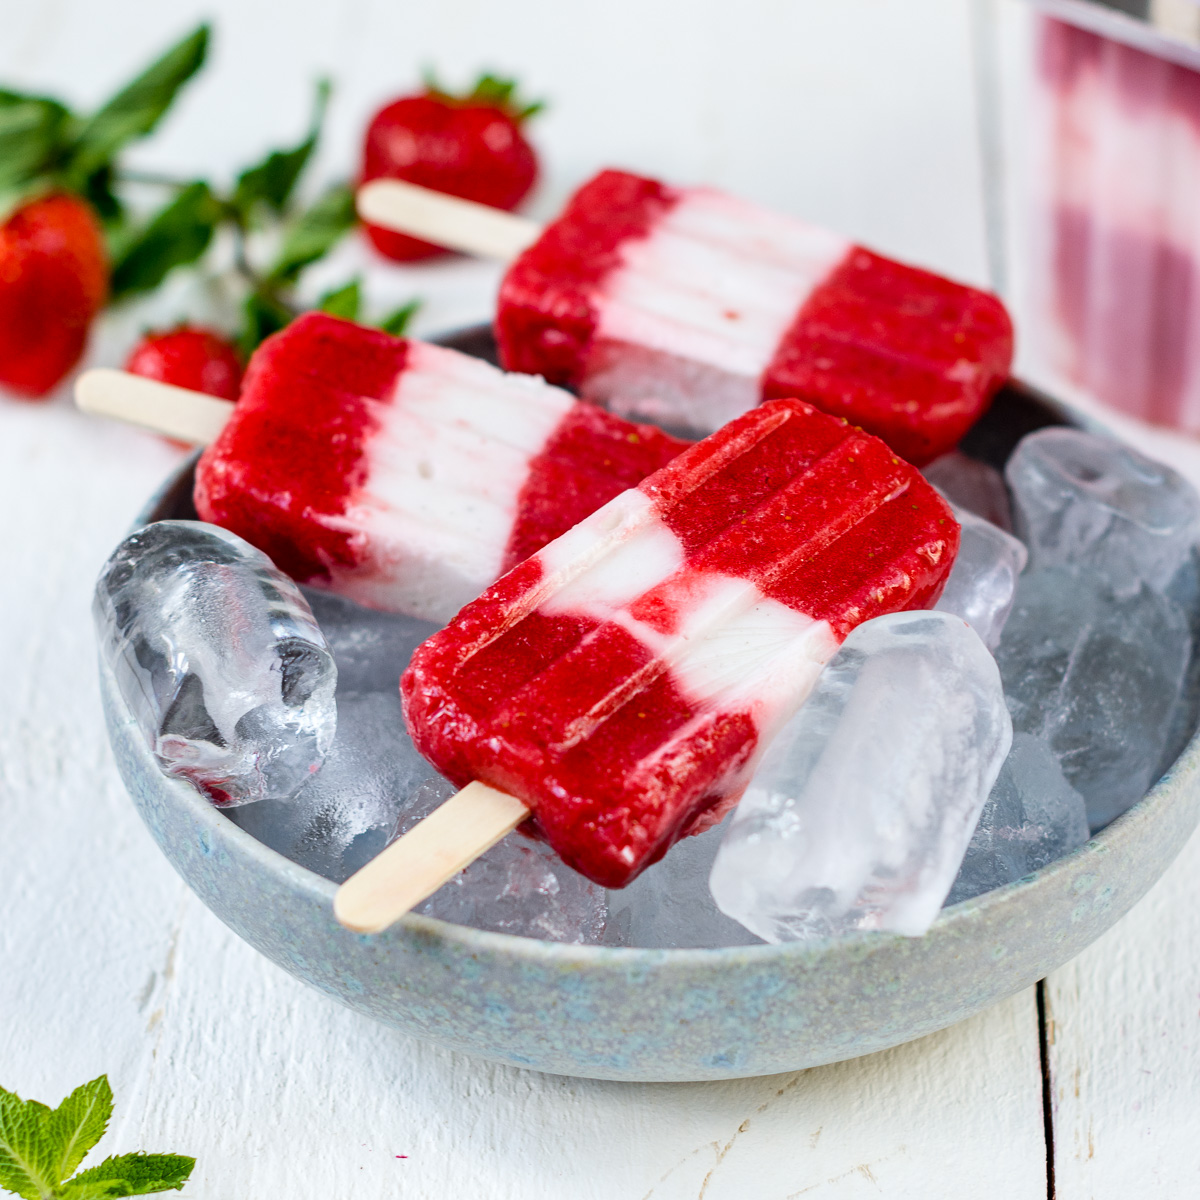 Erdbeer Joghurt Popsicles in Schale mit Eiswürfeln.